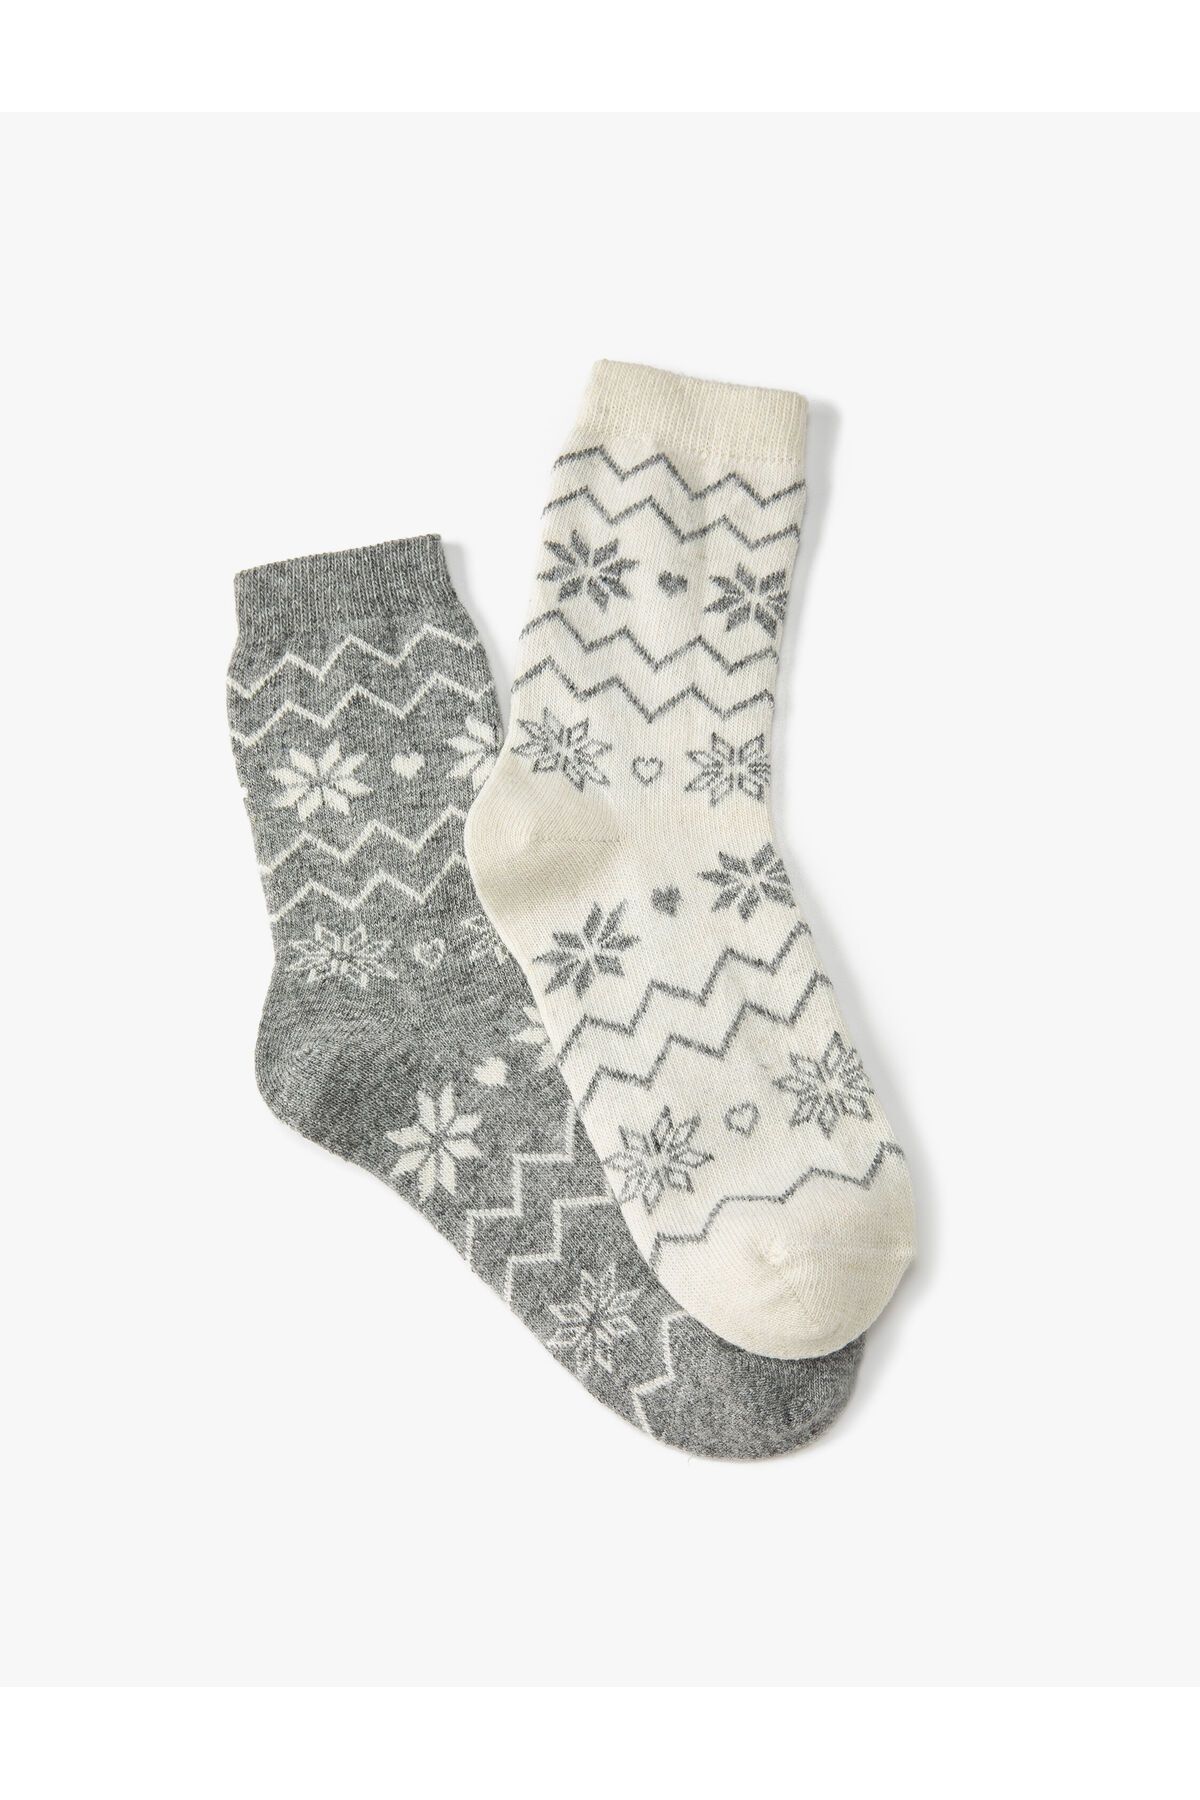 Koton 2'li Soket Çorap Seti Yün Karışımlı Desenli Çok Renkli